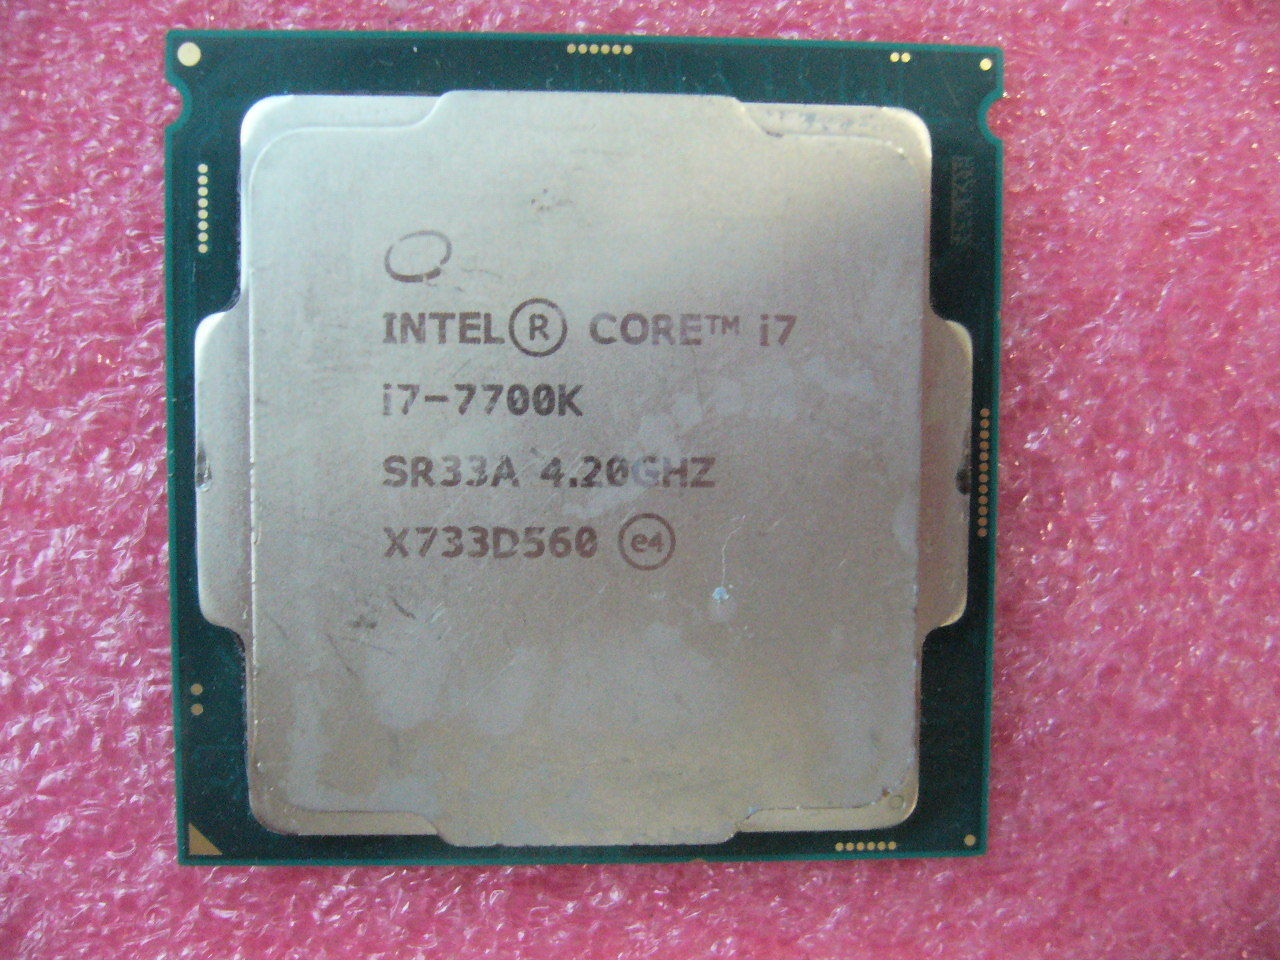 QTY 1x Intel CPU i7-7700K Quad-Cores 4.2Ghz 8MB LGA1151 SR33A